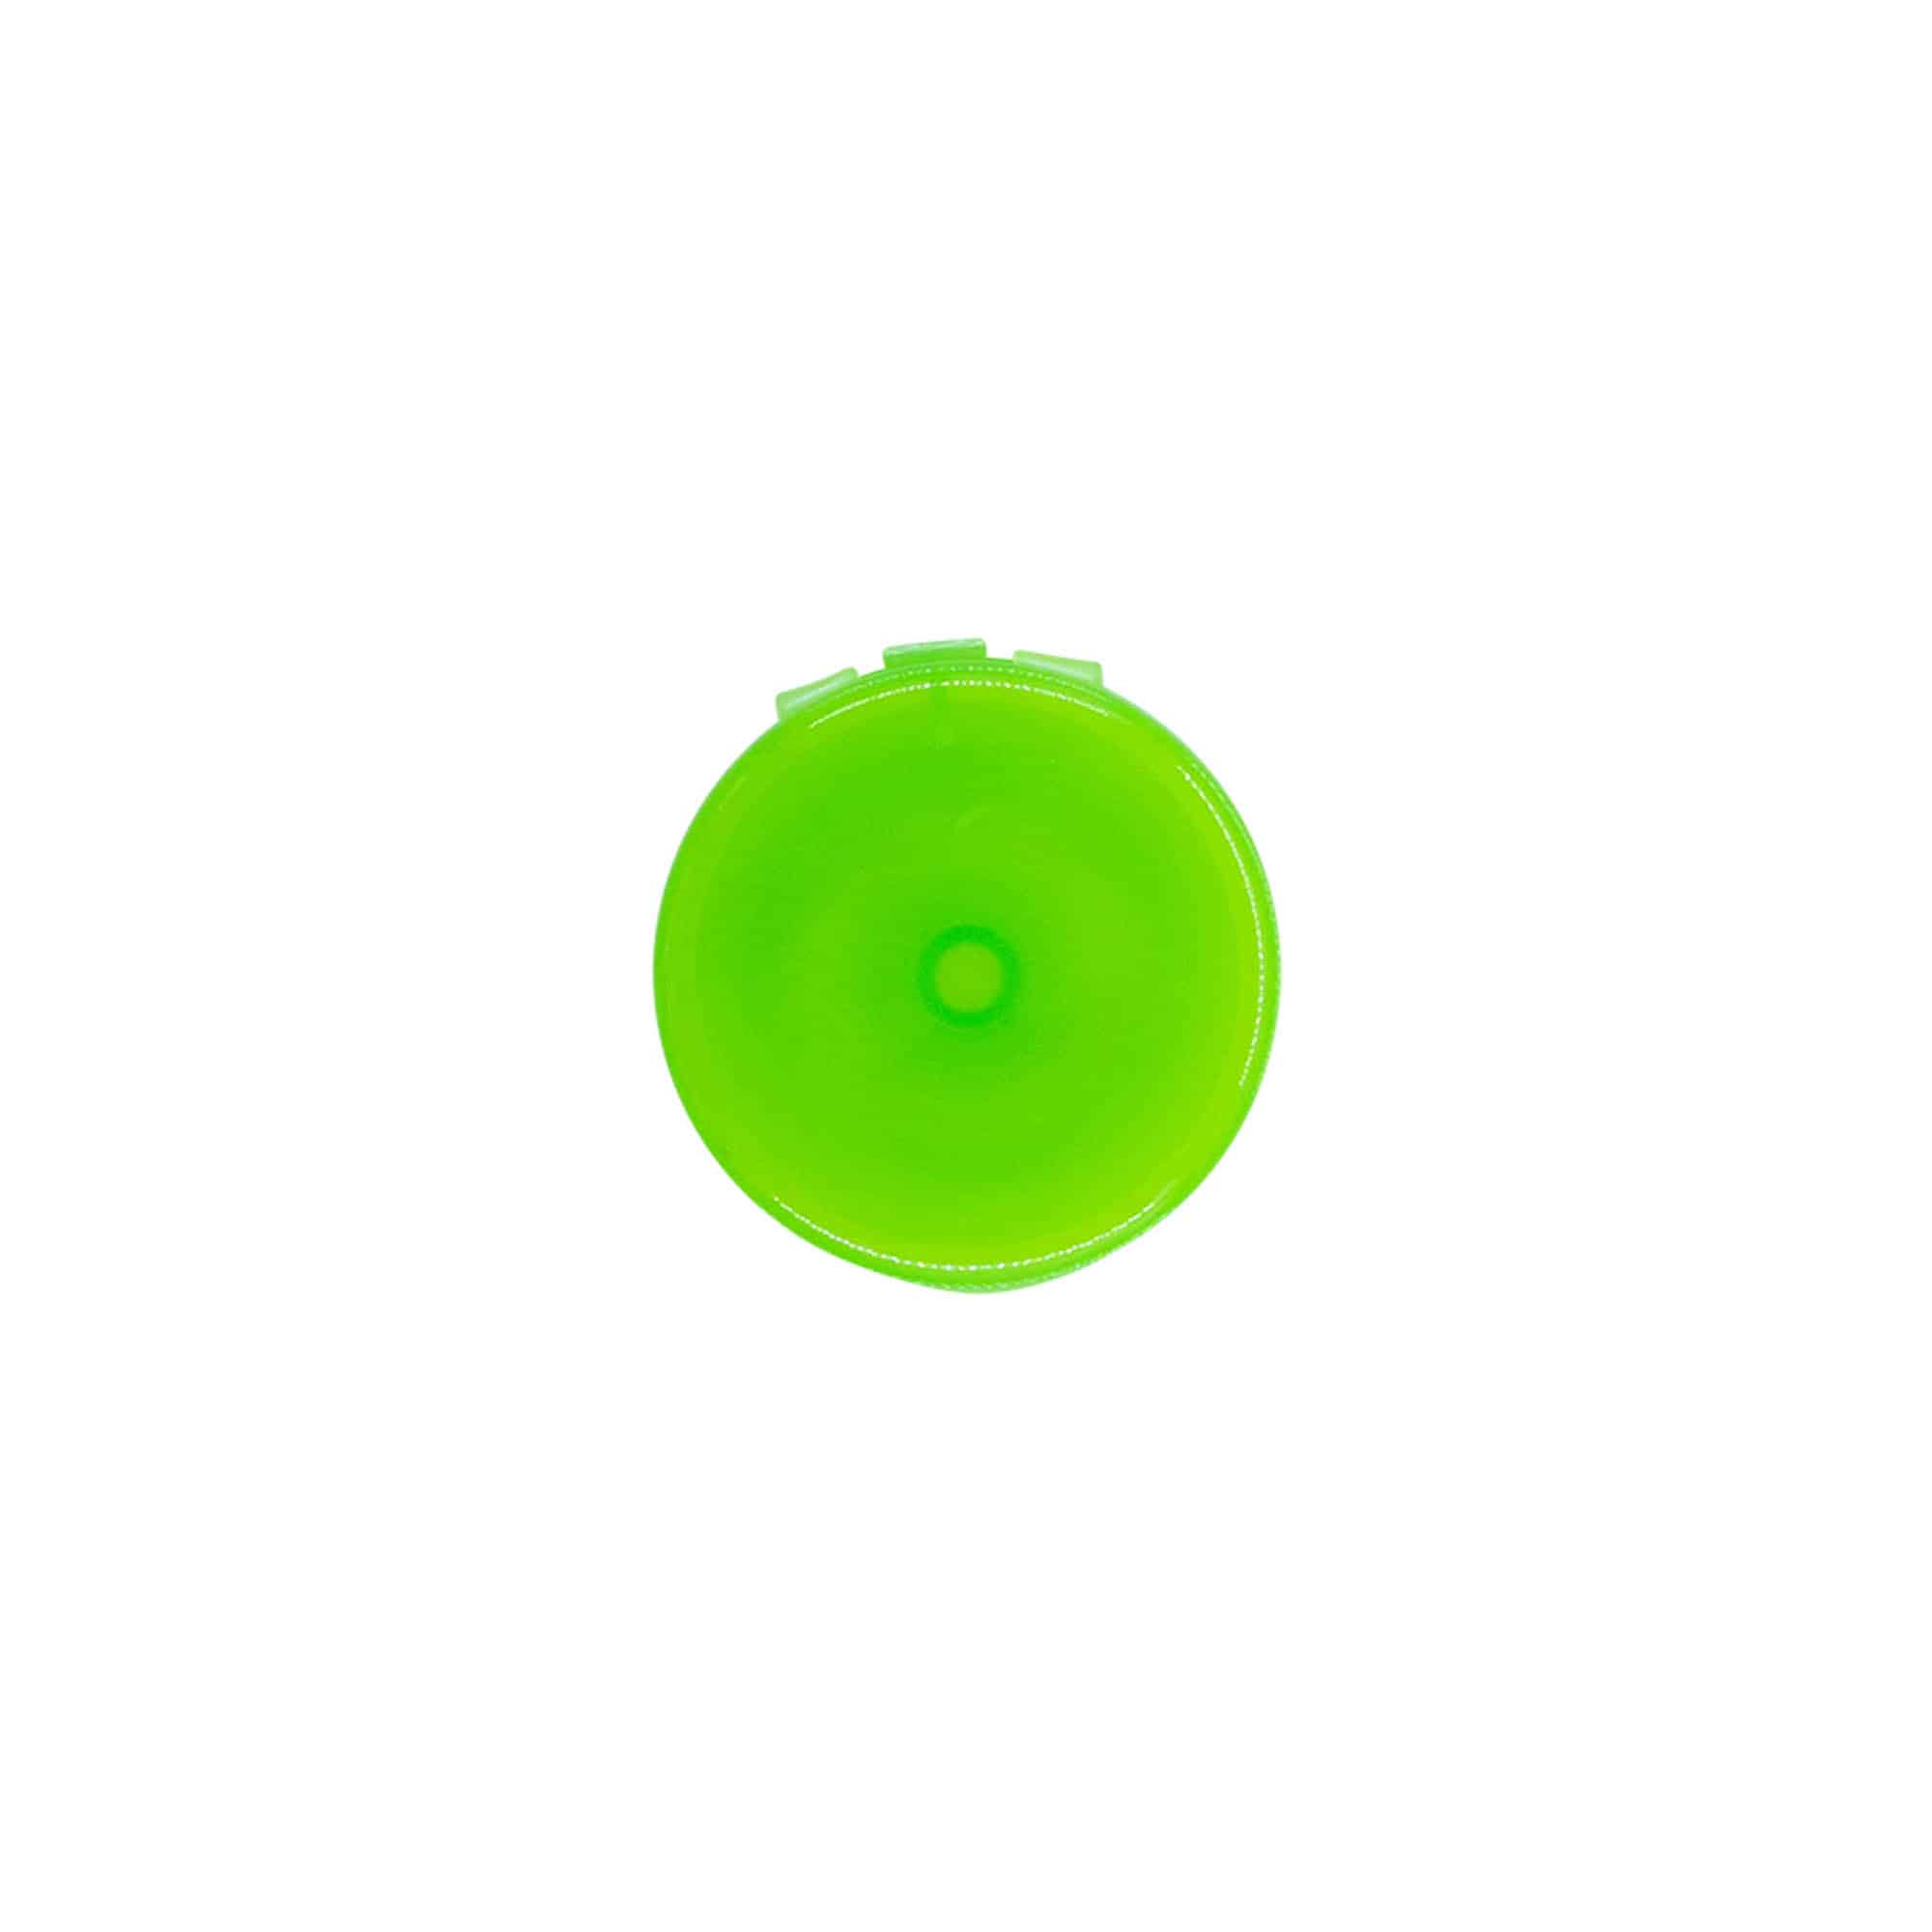 Šroubovací uzávěr s výklopnou krytkou, plast PP, zelený, pro ústí: GPI 24/410